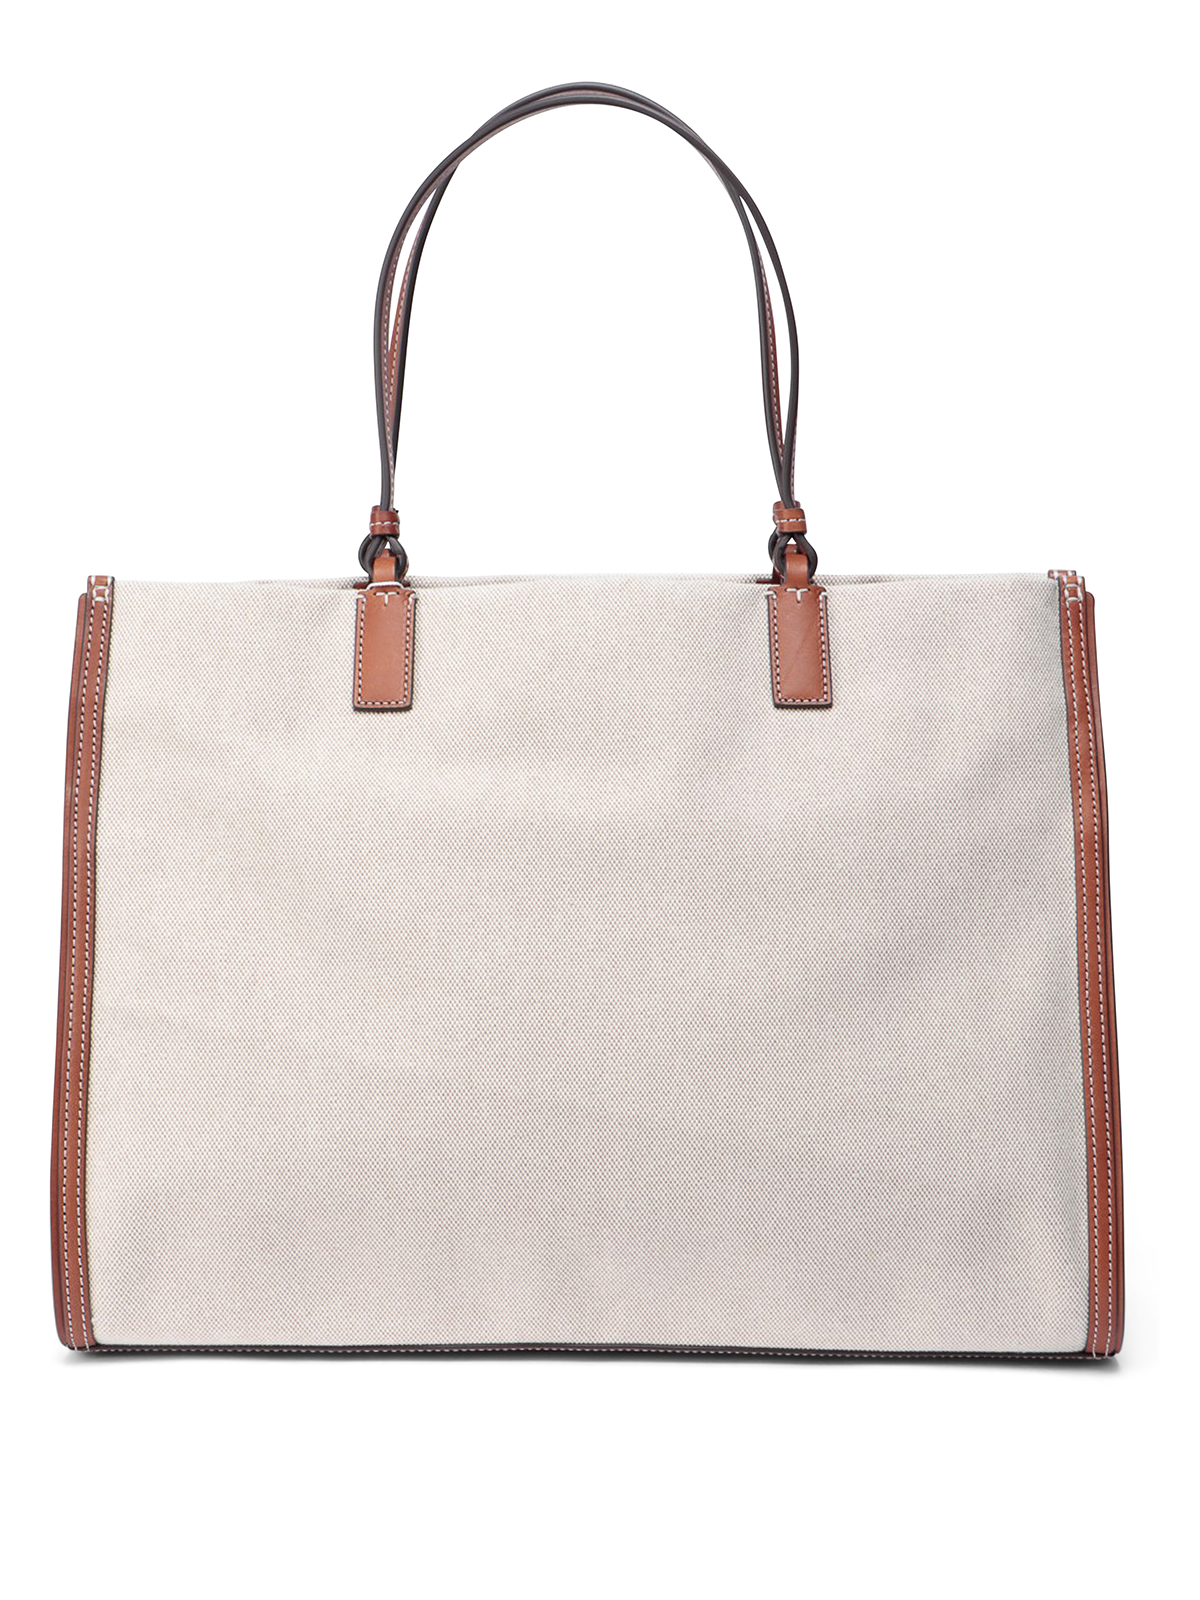 Ella Tote Bag: Women's Handbags, Tote Bags